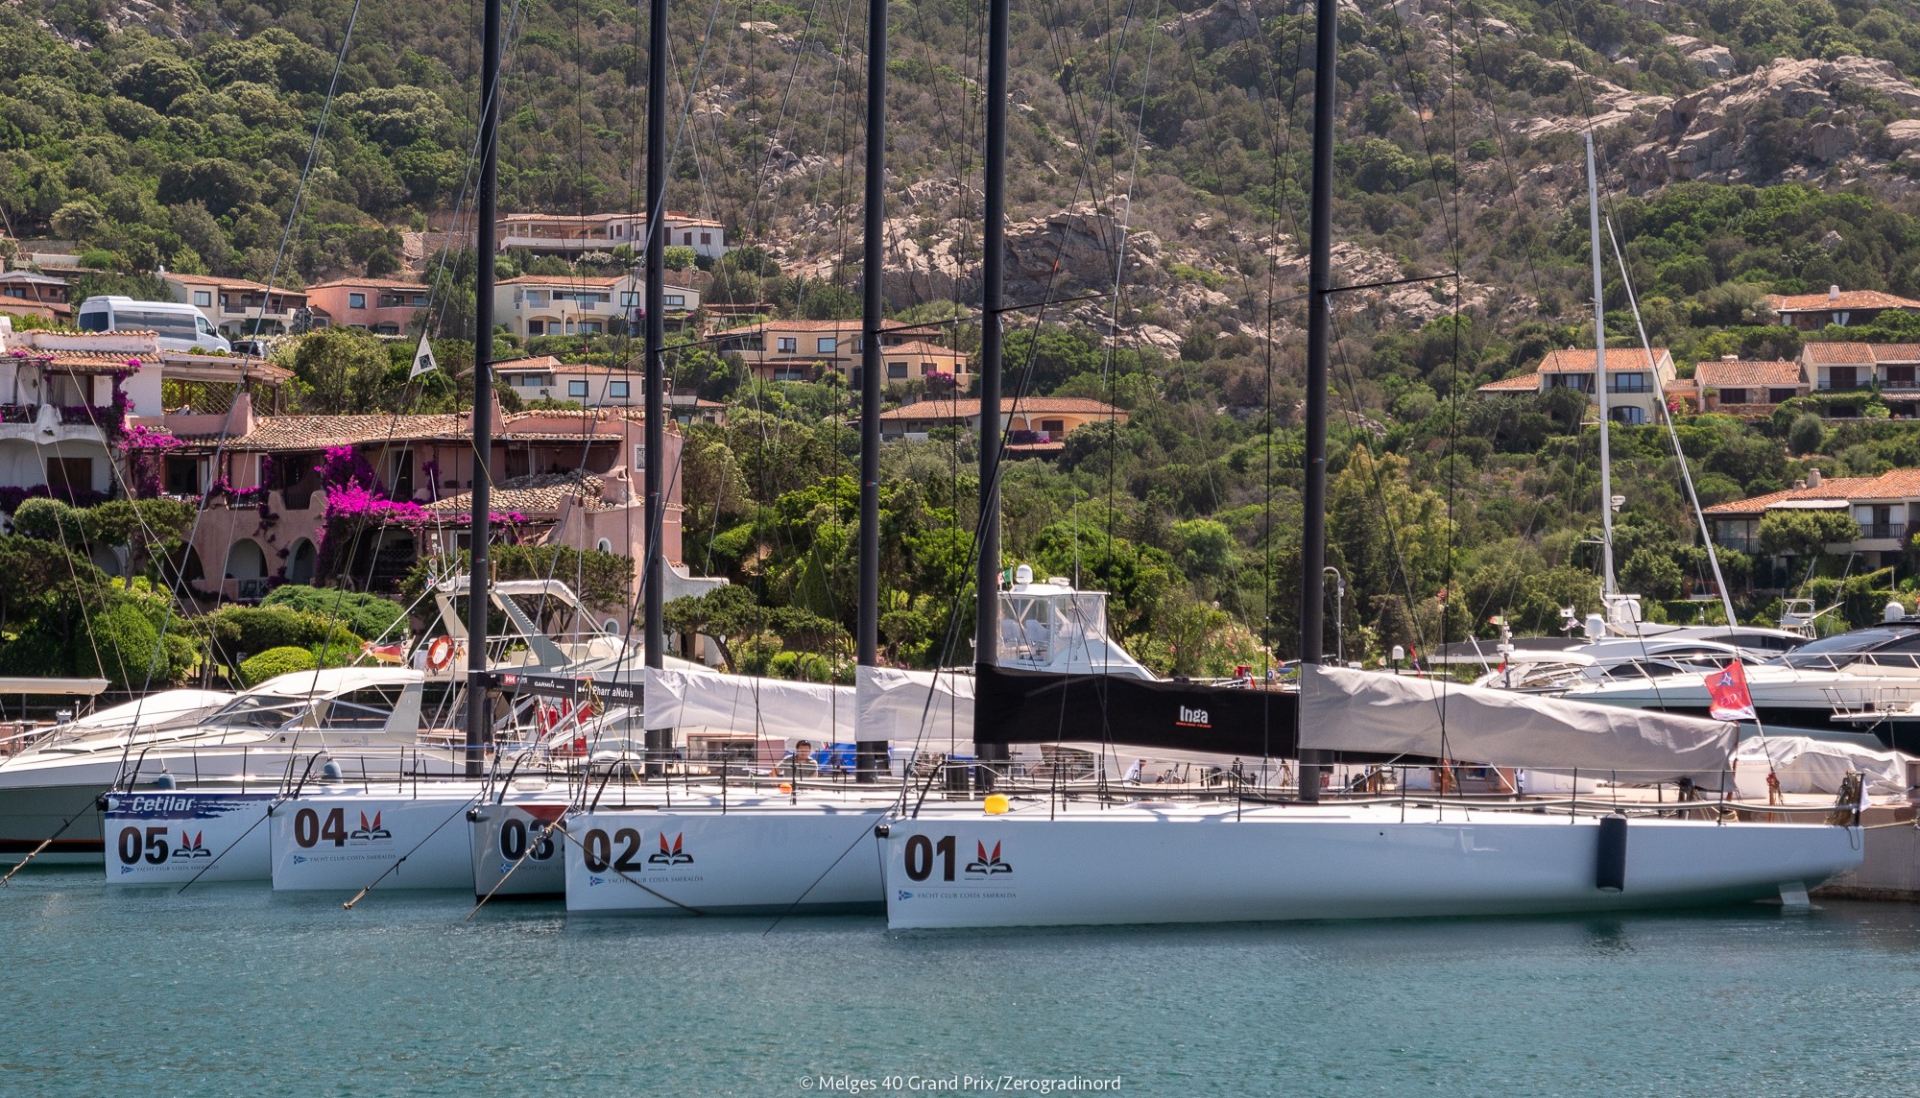 Il troppo vento ferma la flotta Melges 40 - Comunicati Stampa - Yacht Club Costa Smeralda